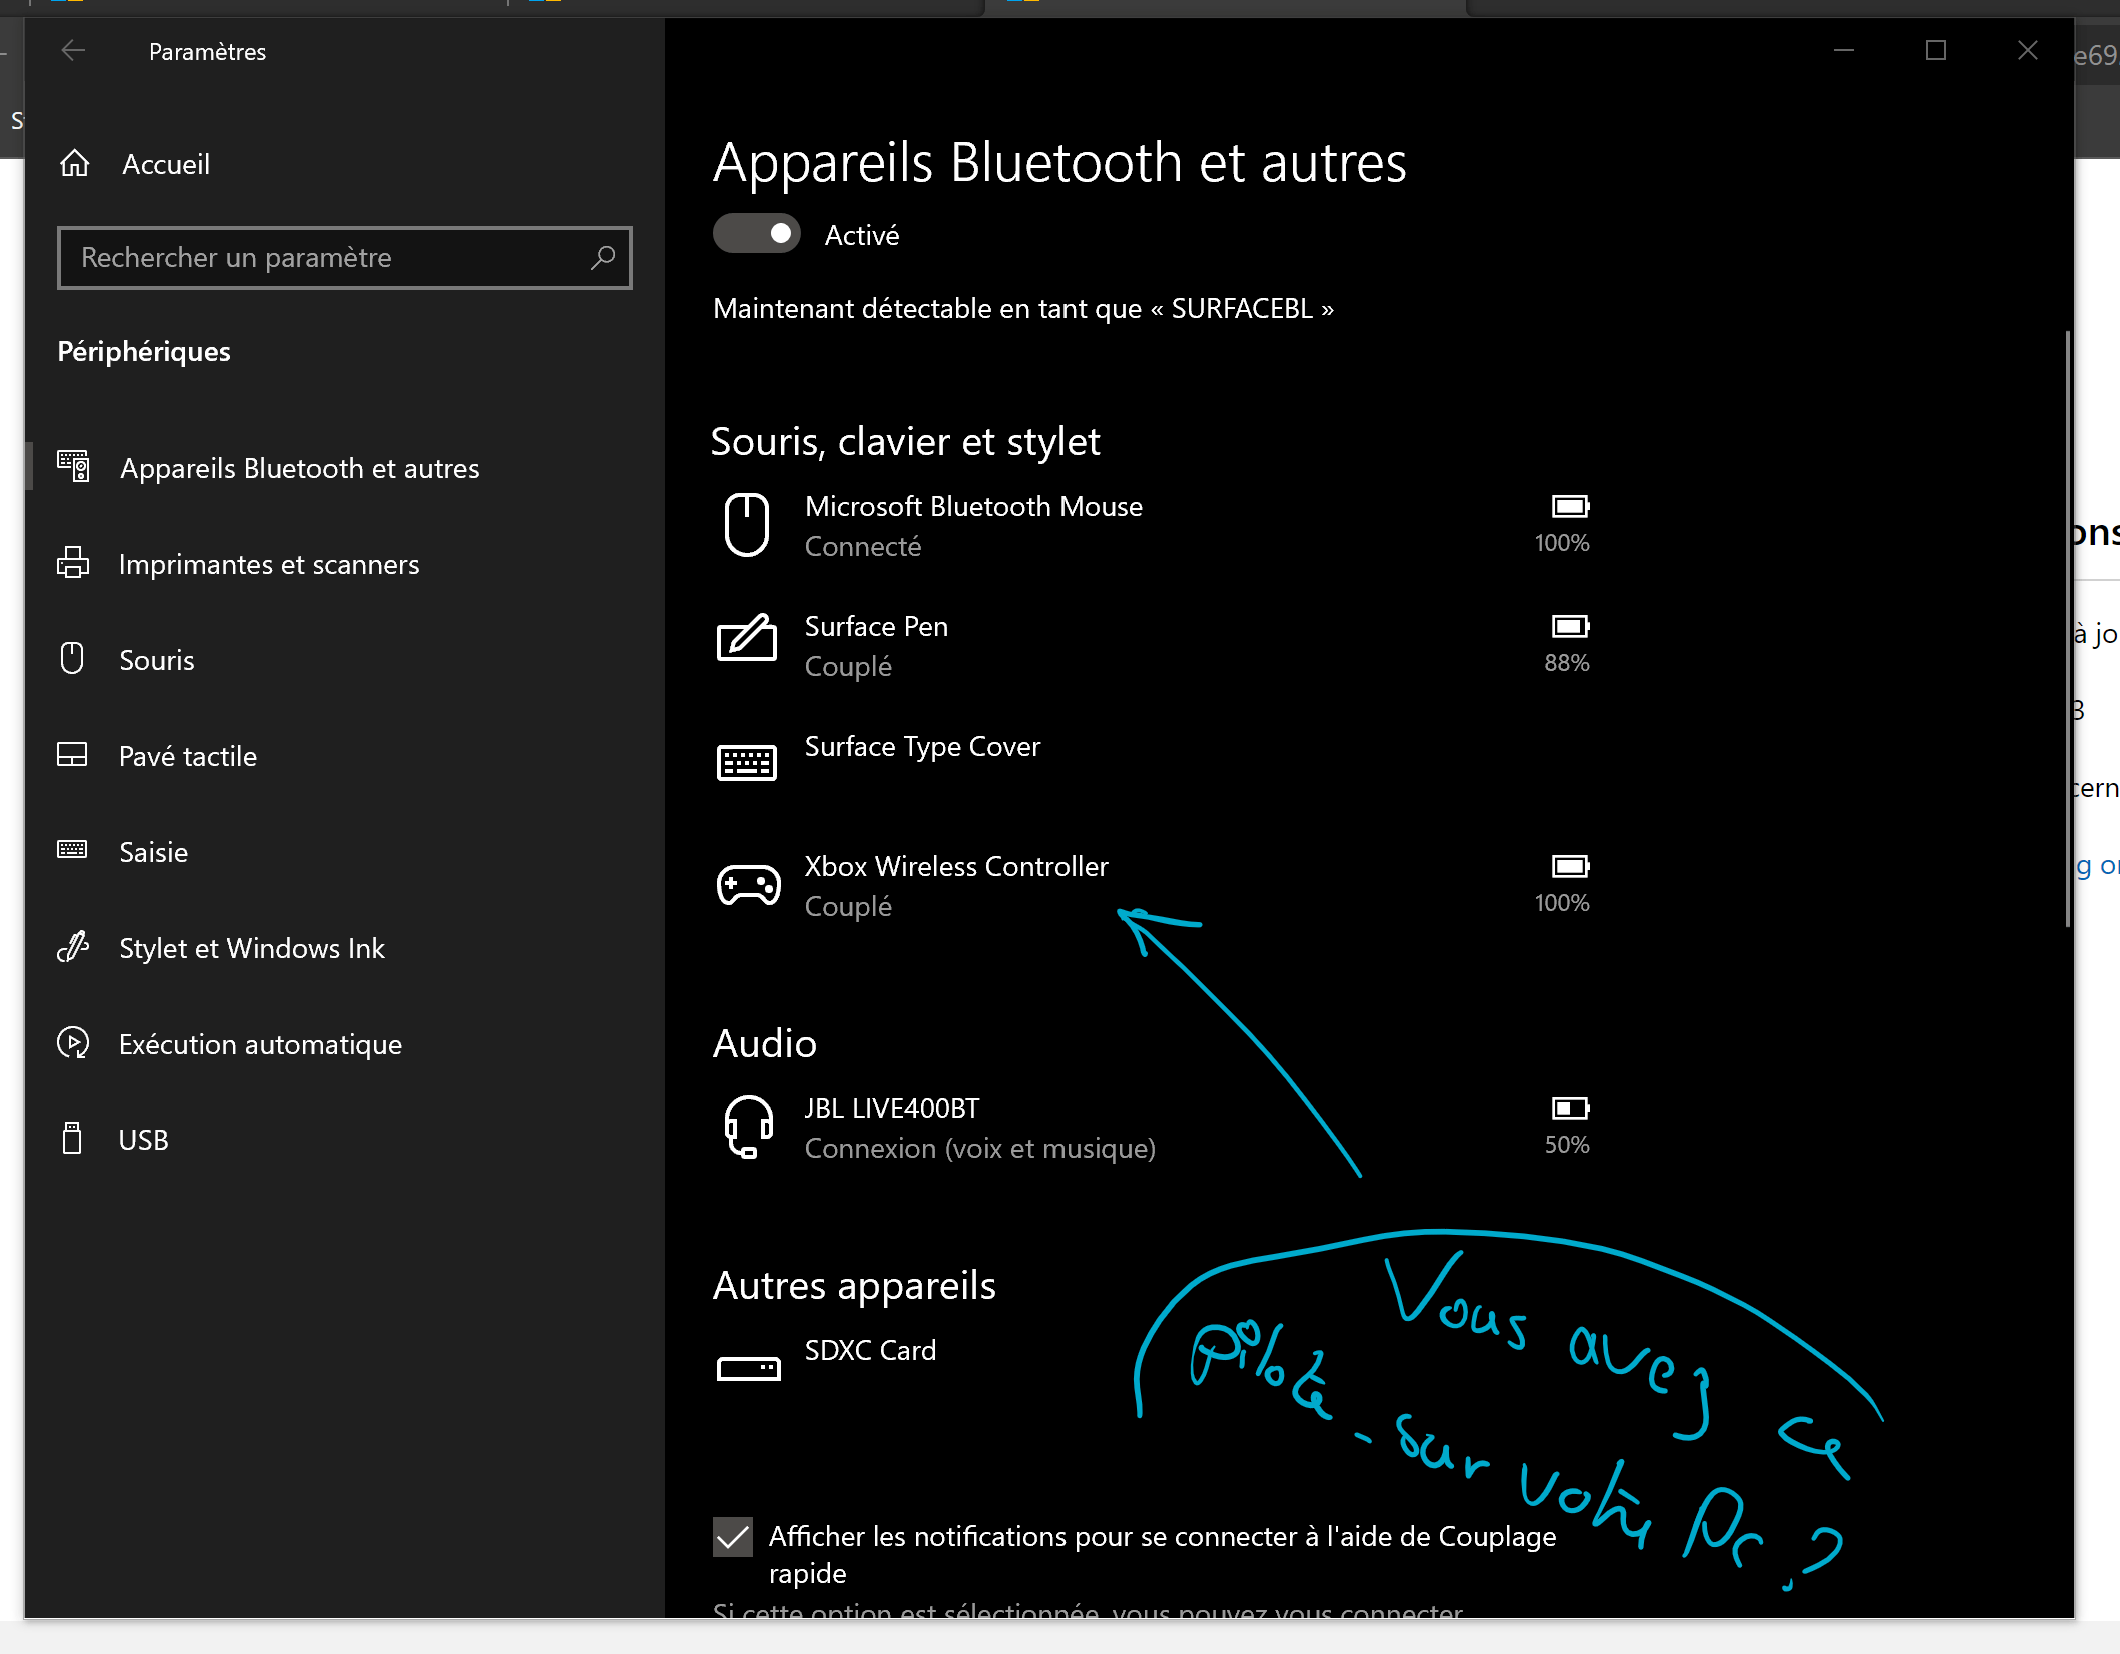 Manette One en USB non reconnue par mon PC Windows 10 - Microsoft Community